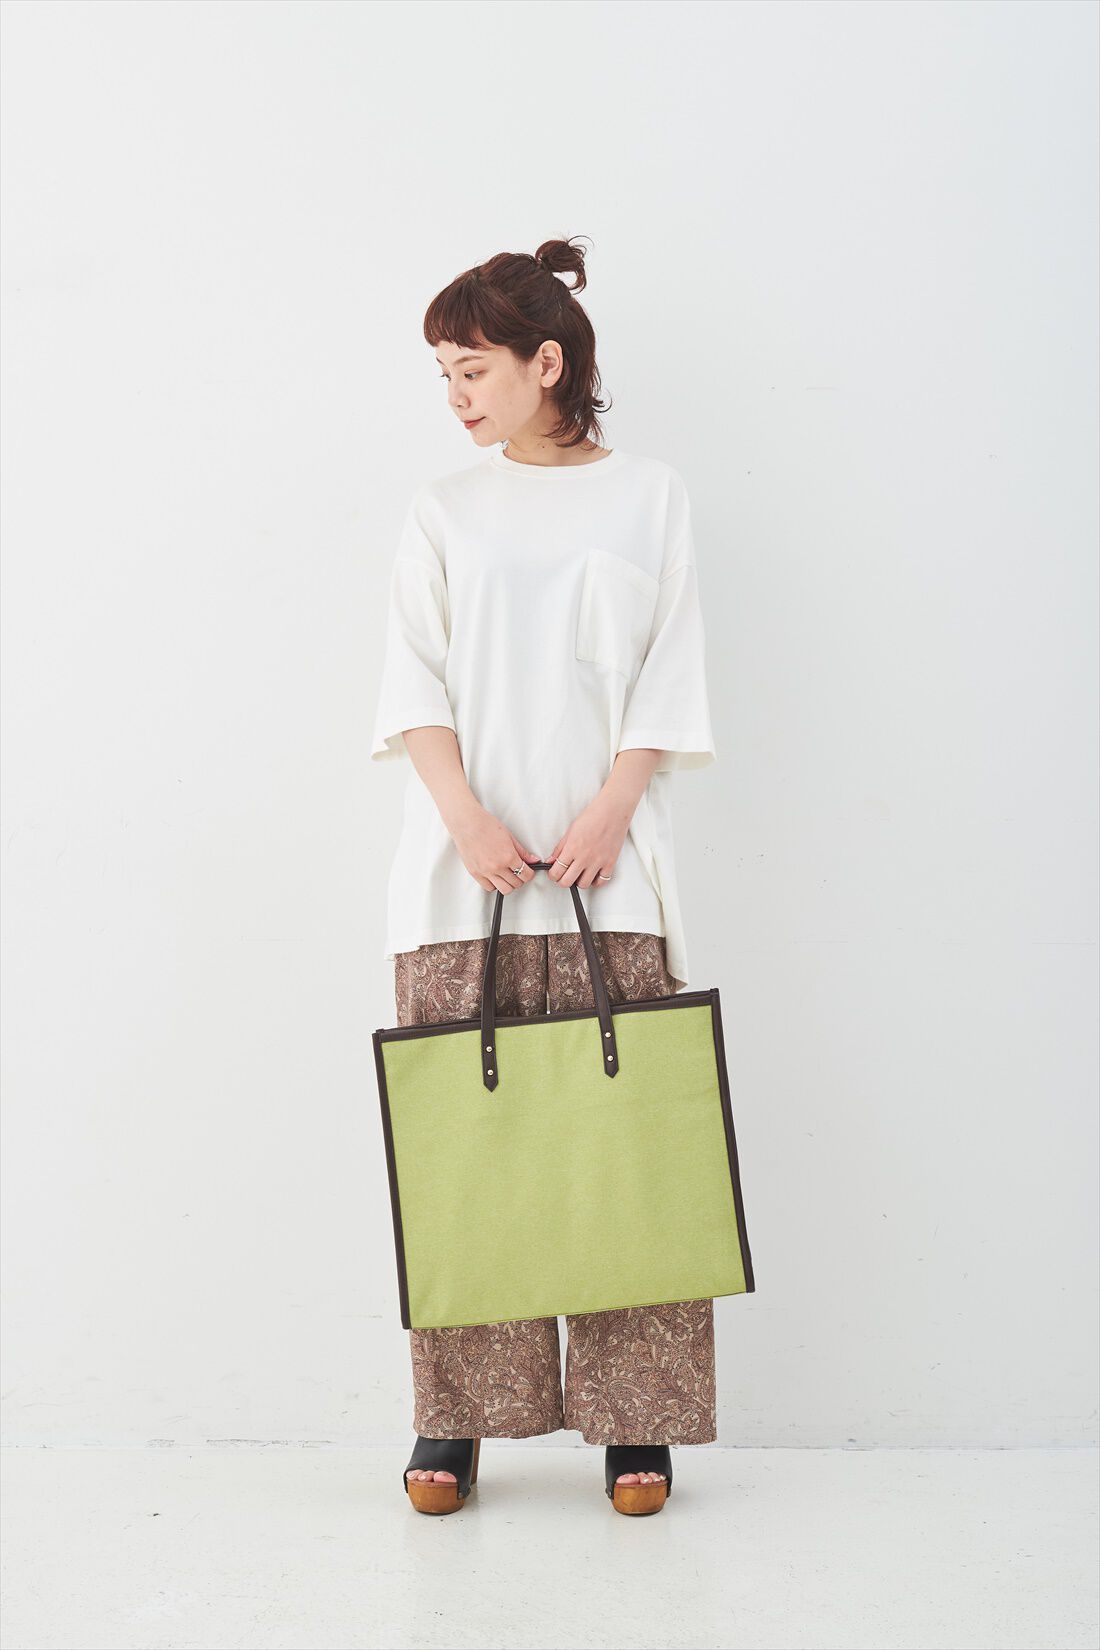 OSYAIRO|OSYAIRO ジャンボうちわが入るパイピングトートバッグ〈グリーン〉|持った時のサイズ感はこれくらい。肩かけもOK。